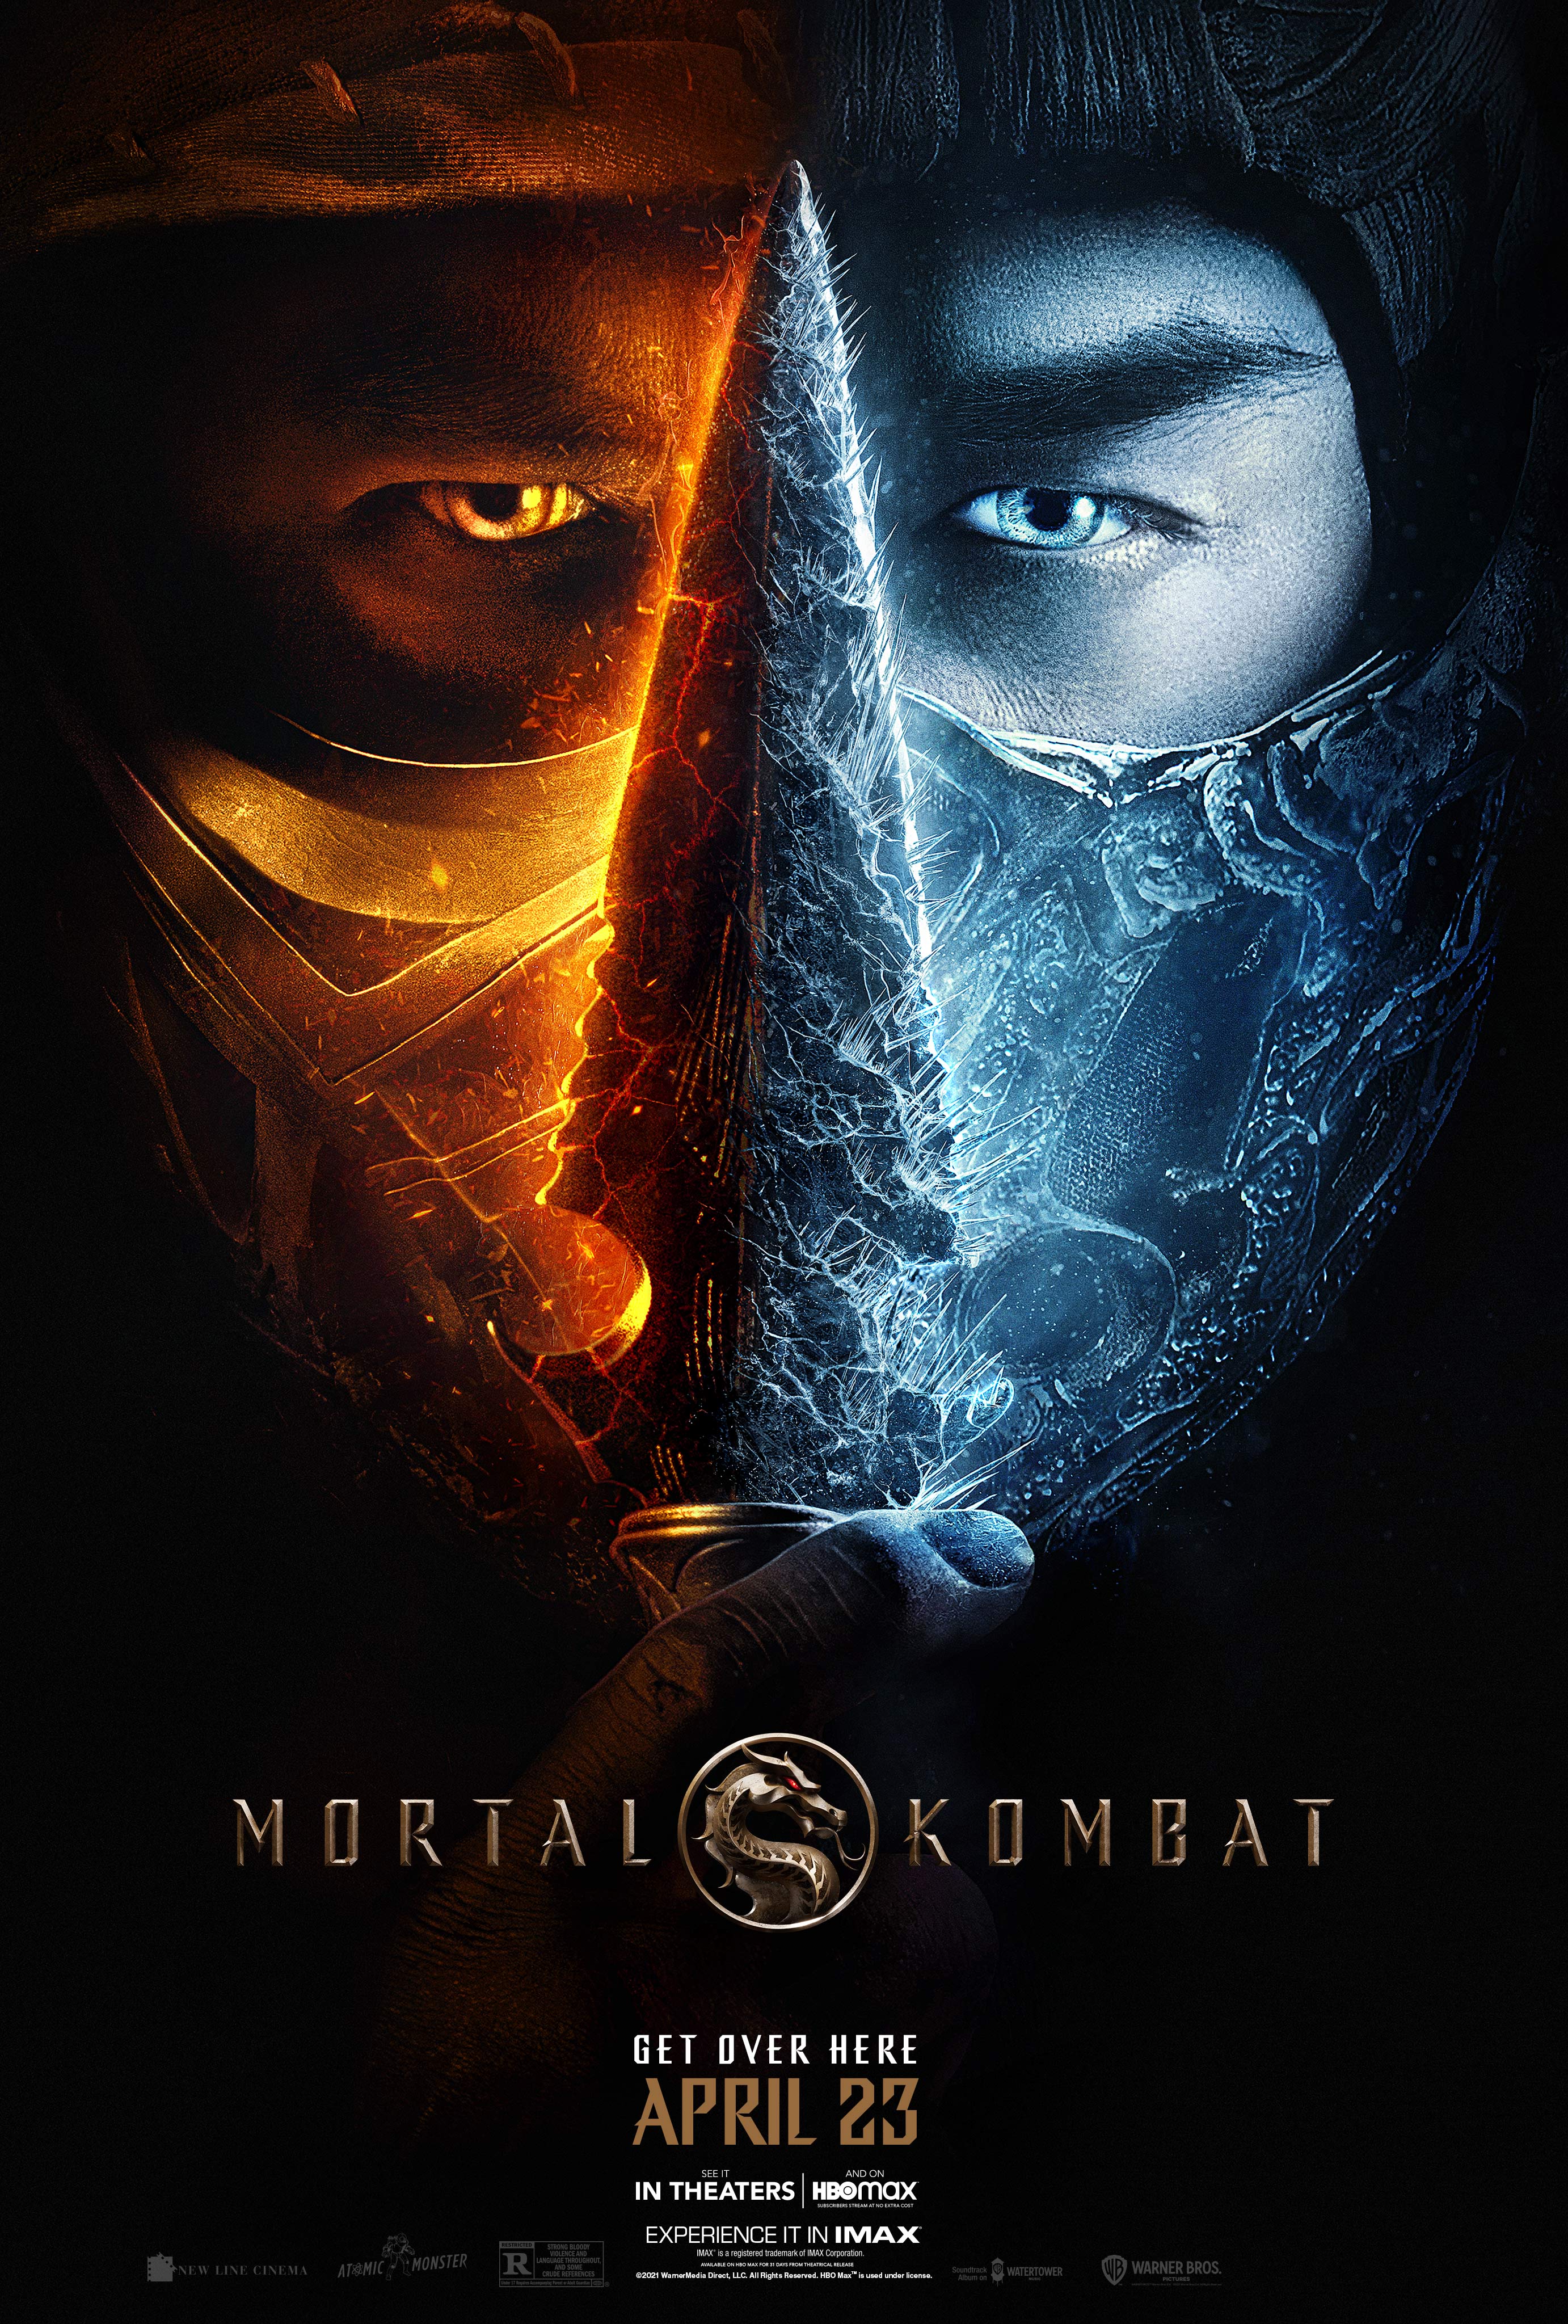 Stiahni si Filmy s titulkama Mortal Kombat (2021)[Webrip] = CSFD 76%